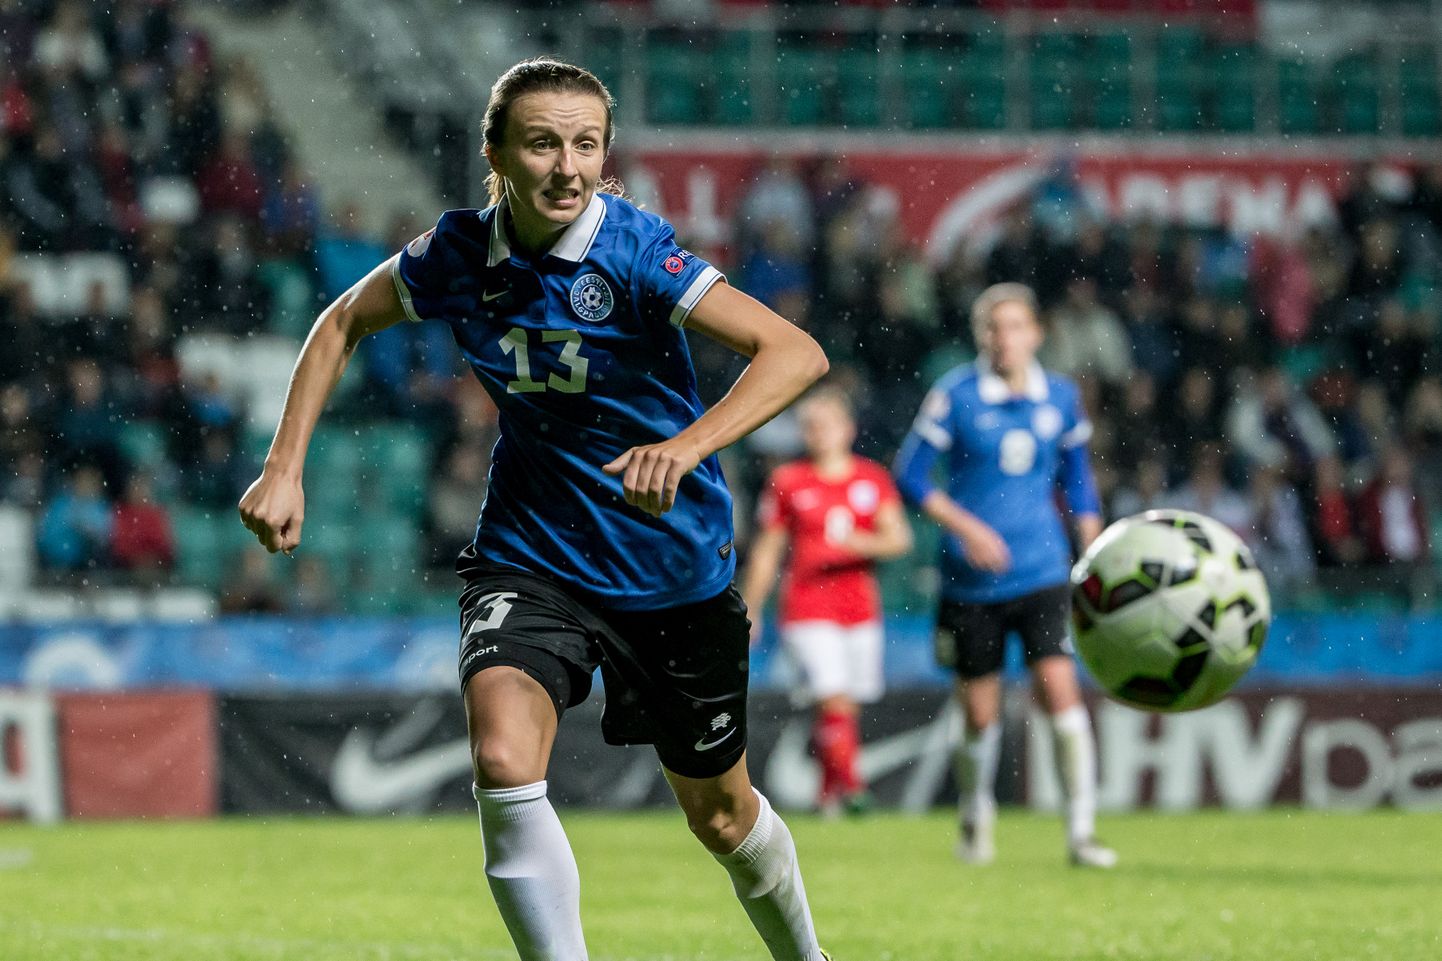 Запланированный на вторник матч между женскими сборными Словении и Эстонии отменяется